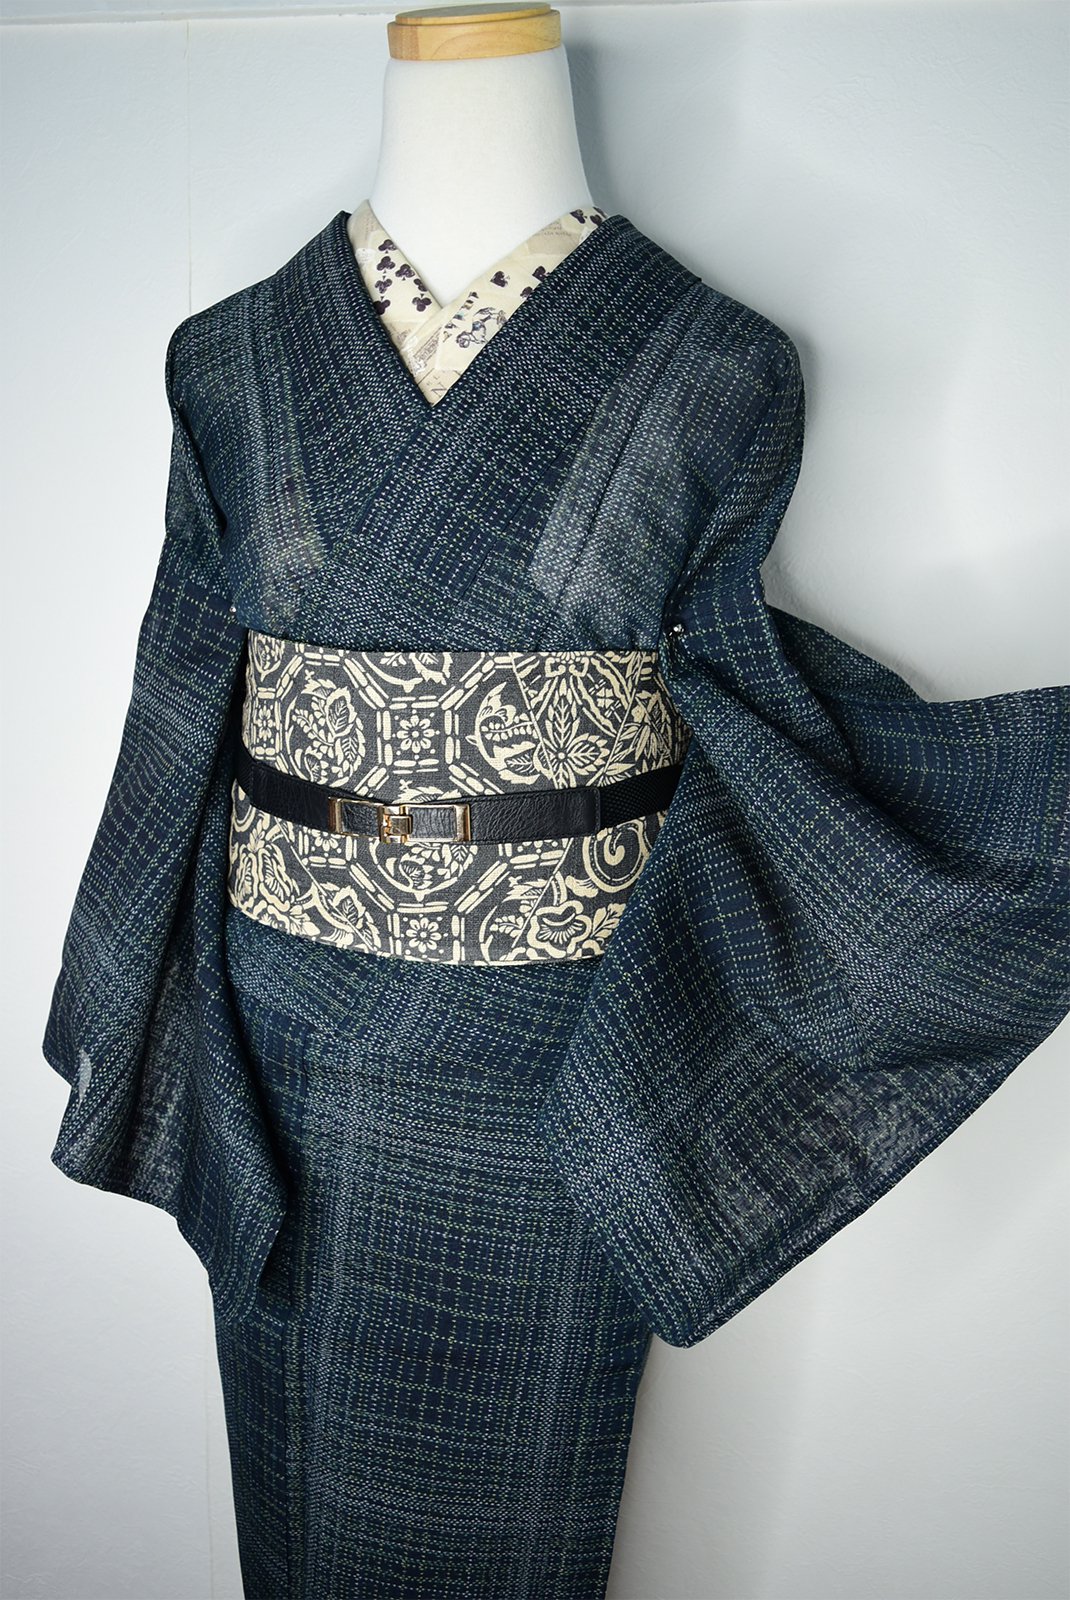 翠雨絣格子美しい正絹夏紬単着物 - アンティーク着物・リサイクル着物 